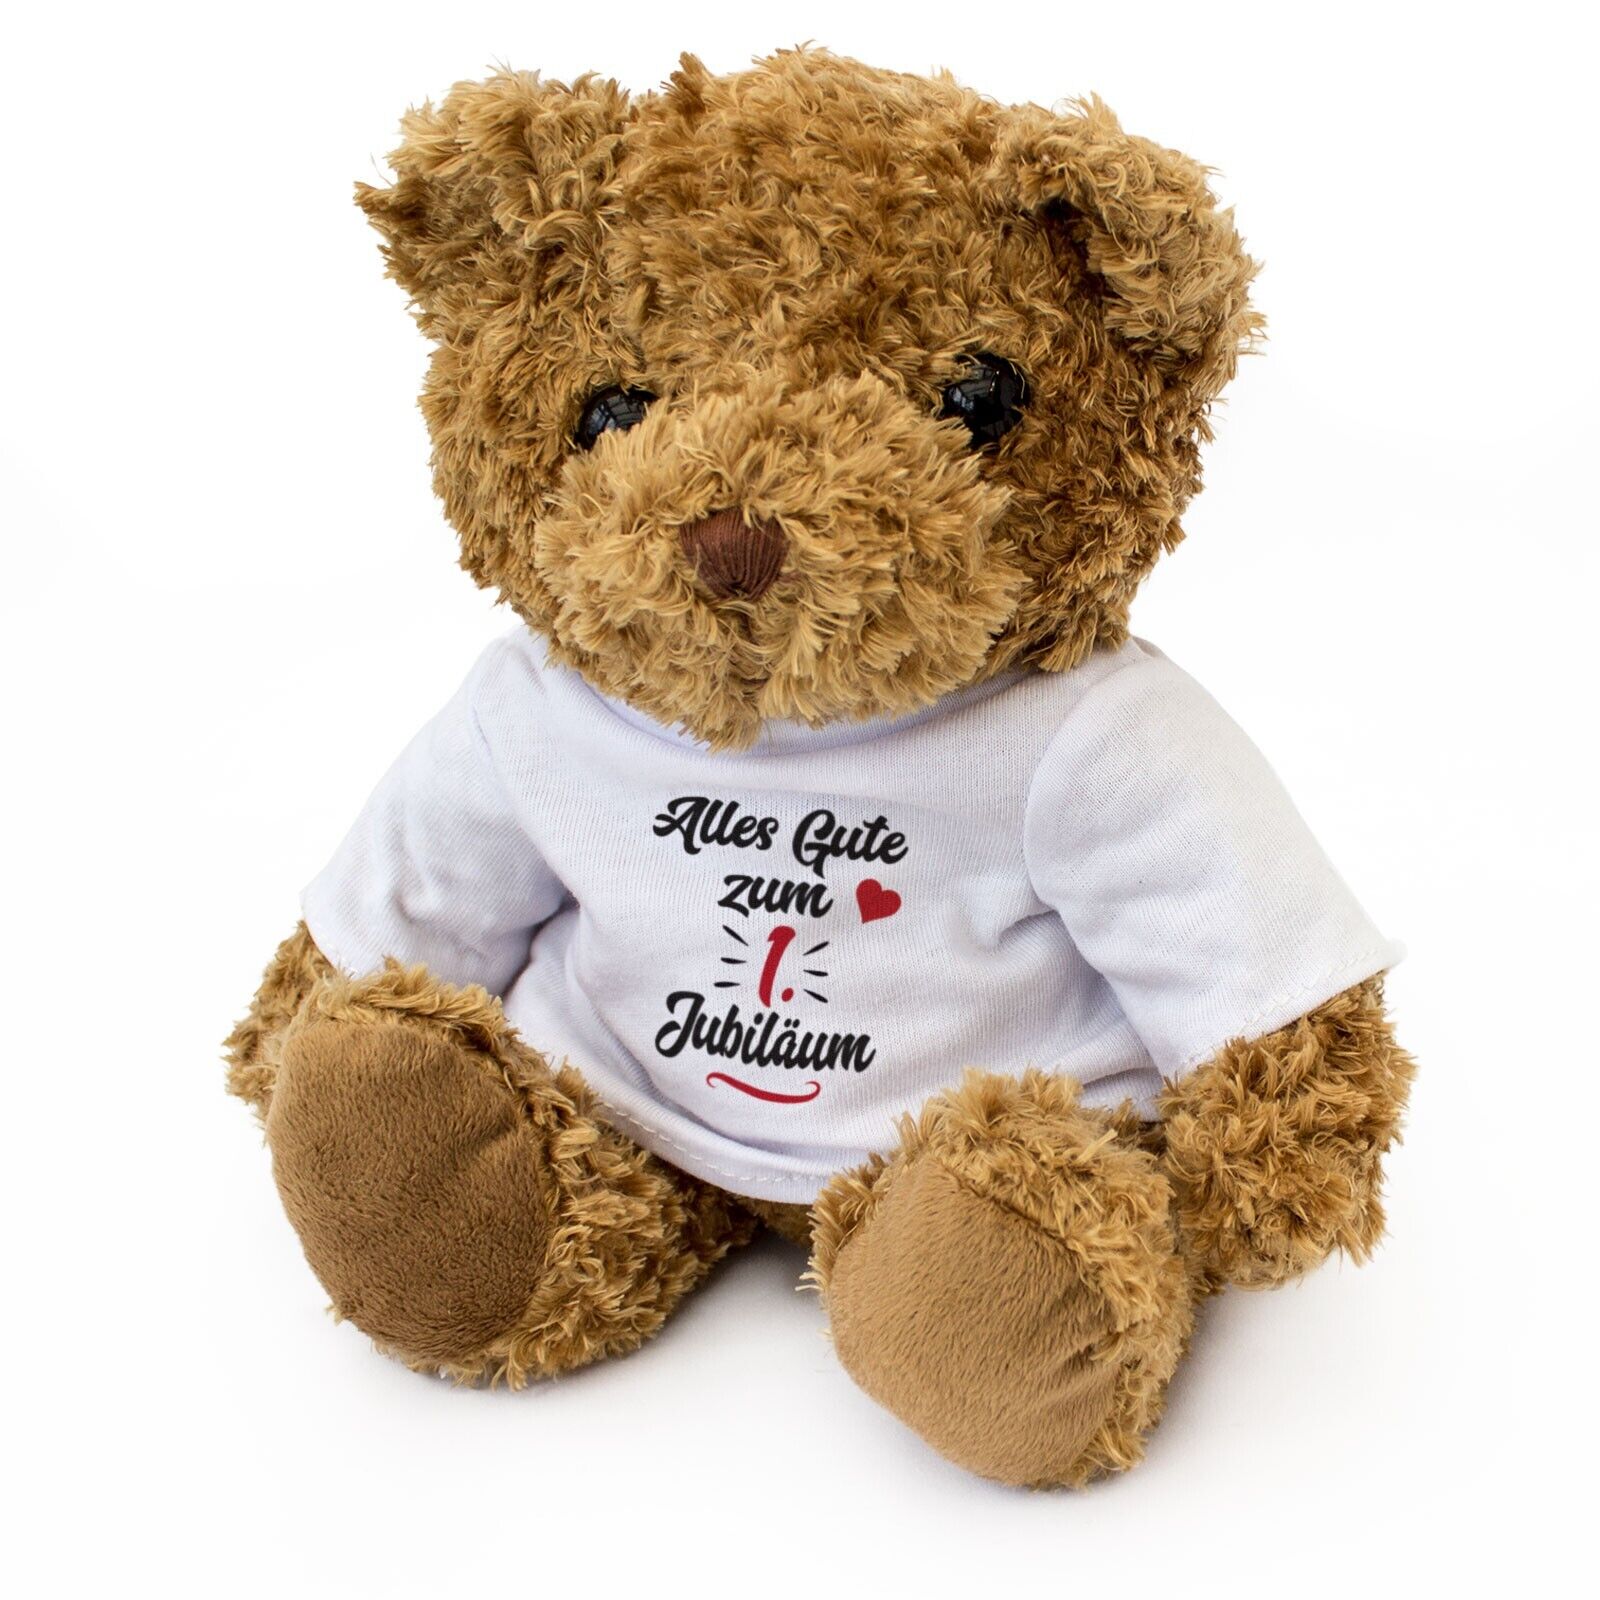 NEW - Alles Gute Zum Jubiläum 1 - Teddy Bear - Adorable Cute Cuddly Gift Present